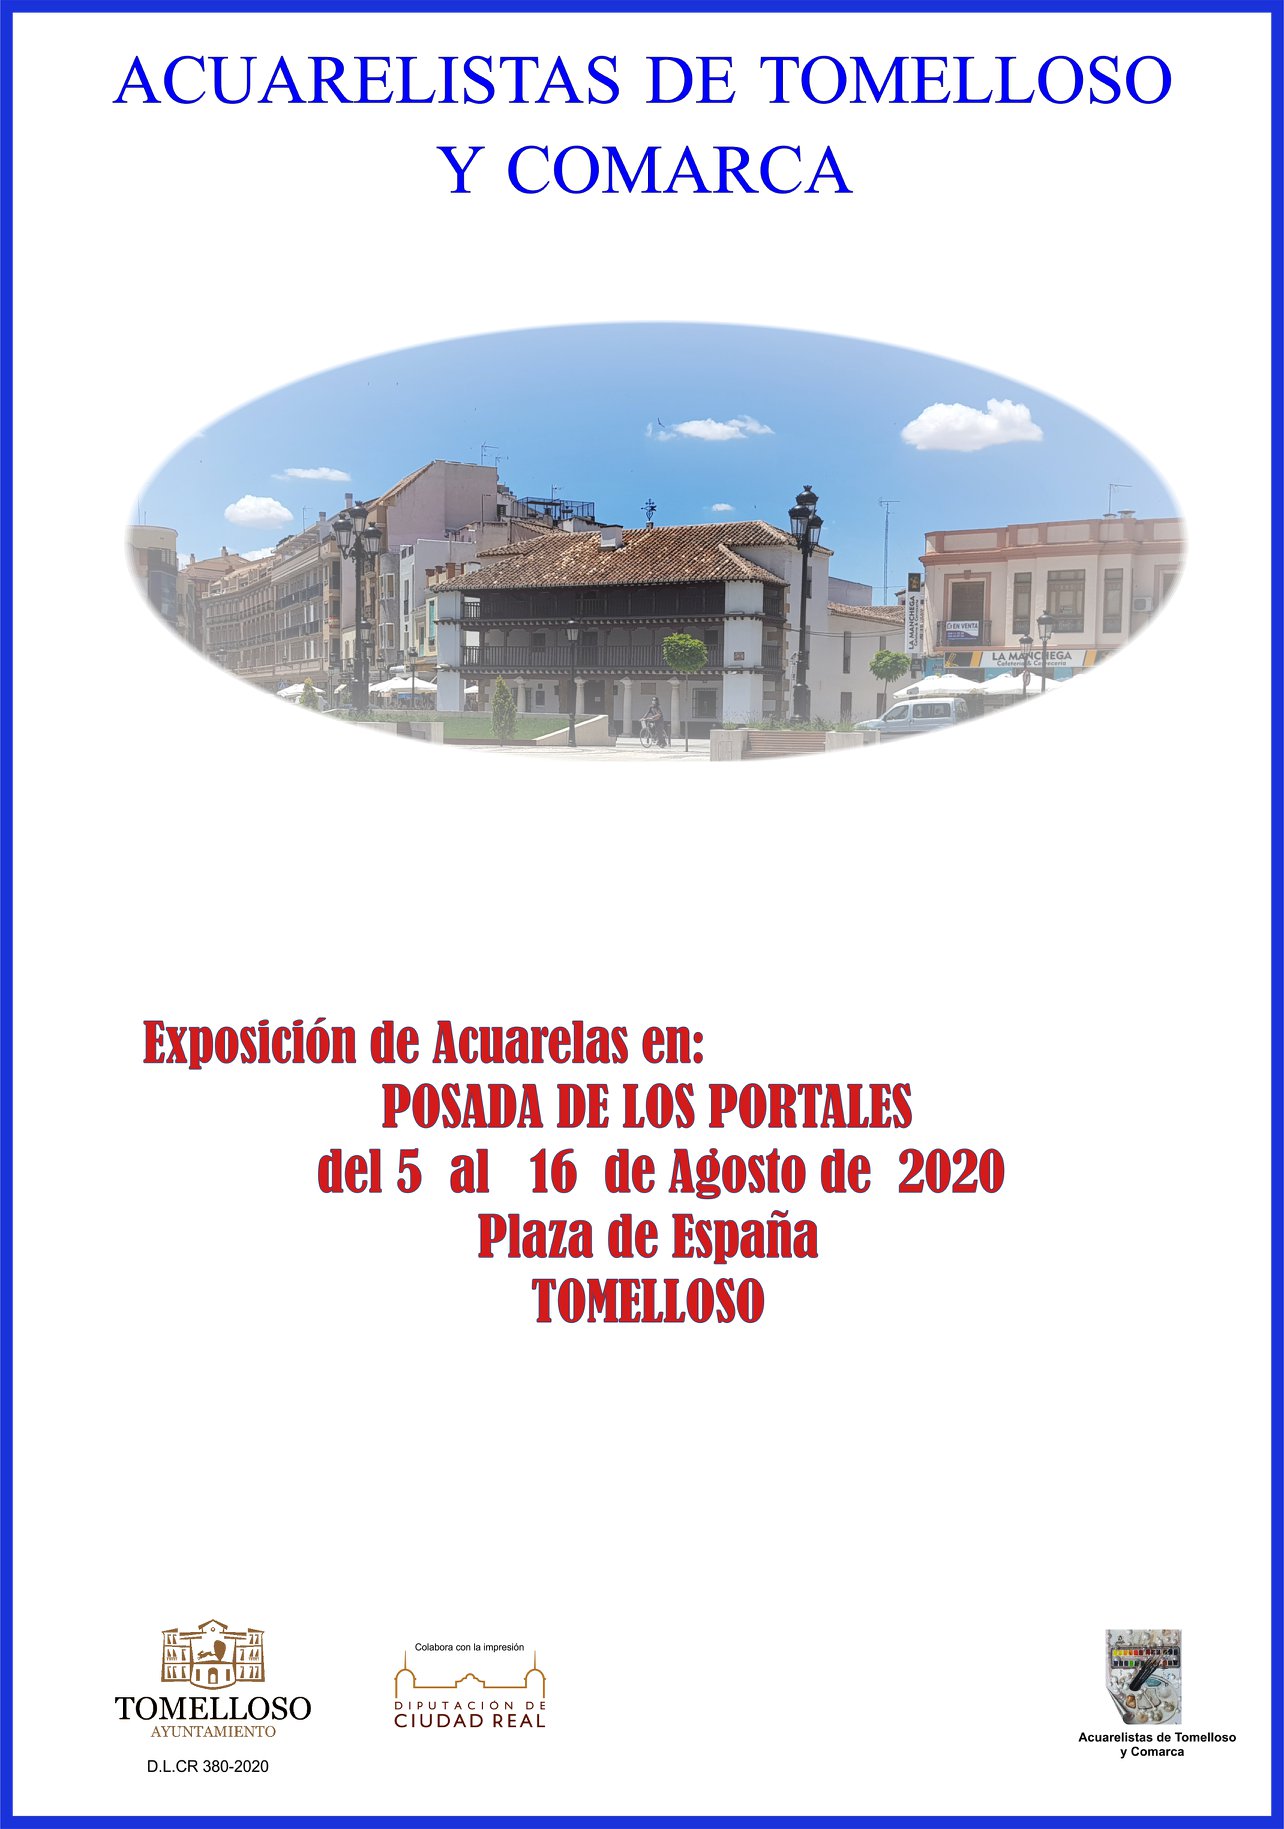 Las exposiciones vuelven a la Posada de Los Portales de la mano de los Acuarelistas de Tomelloso y Comarca